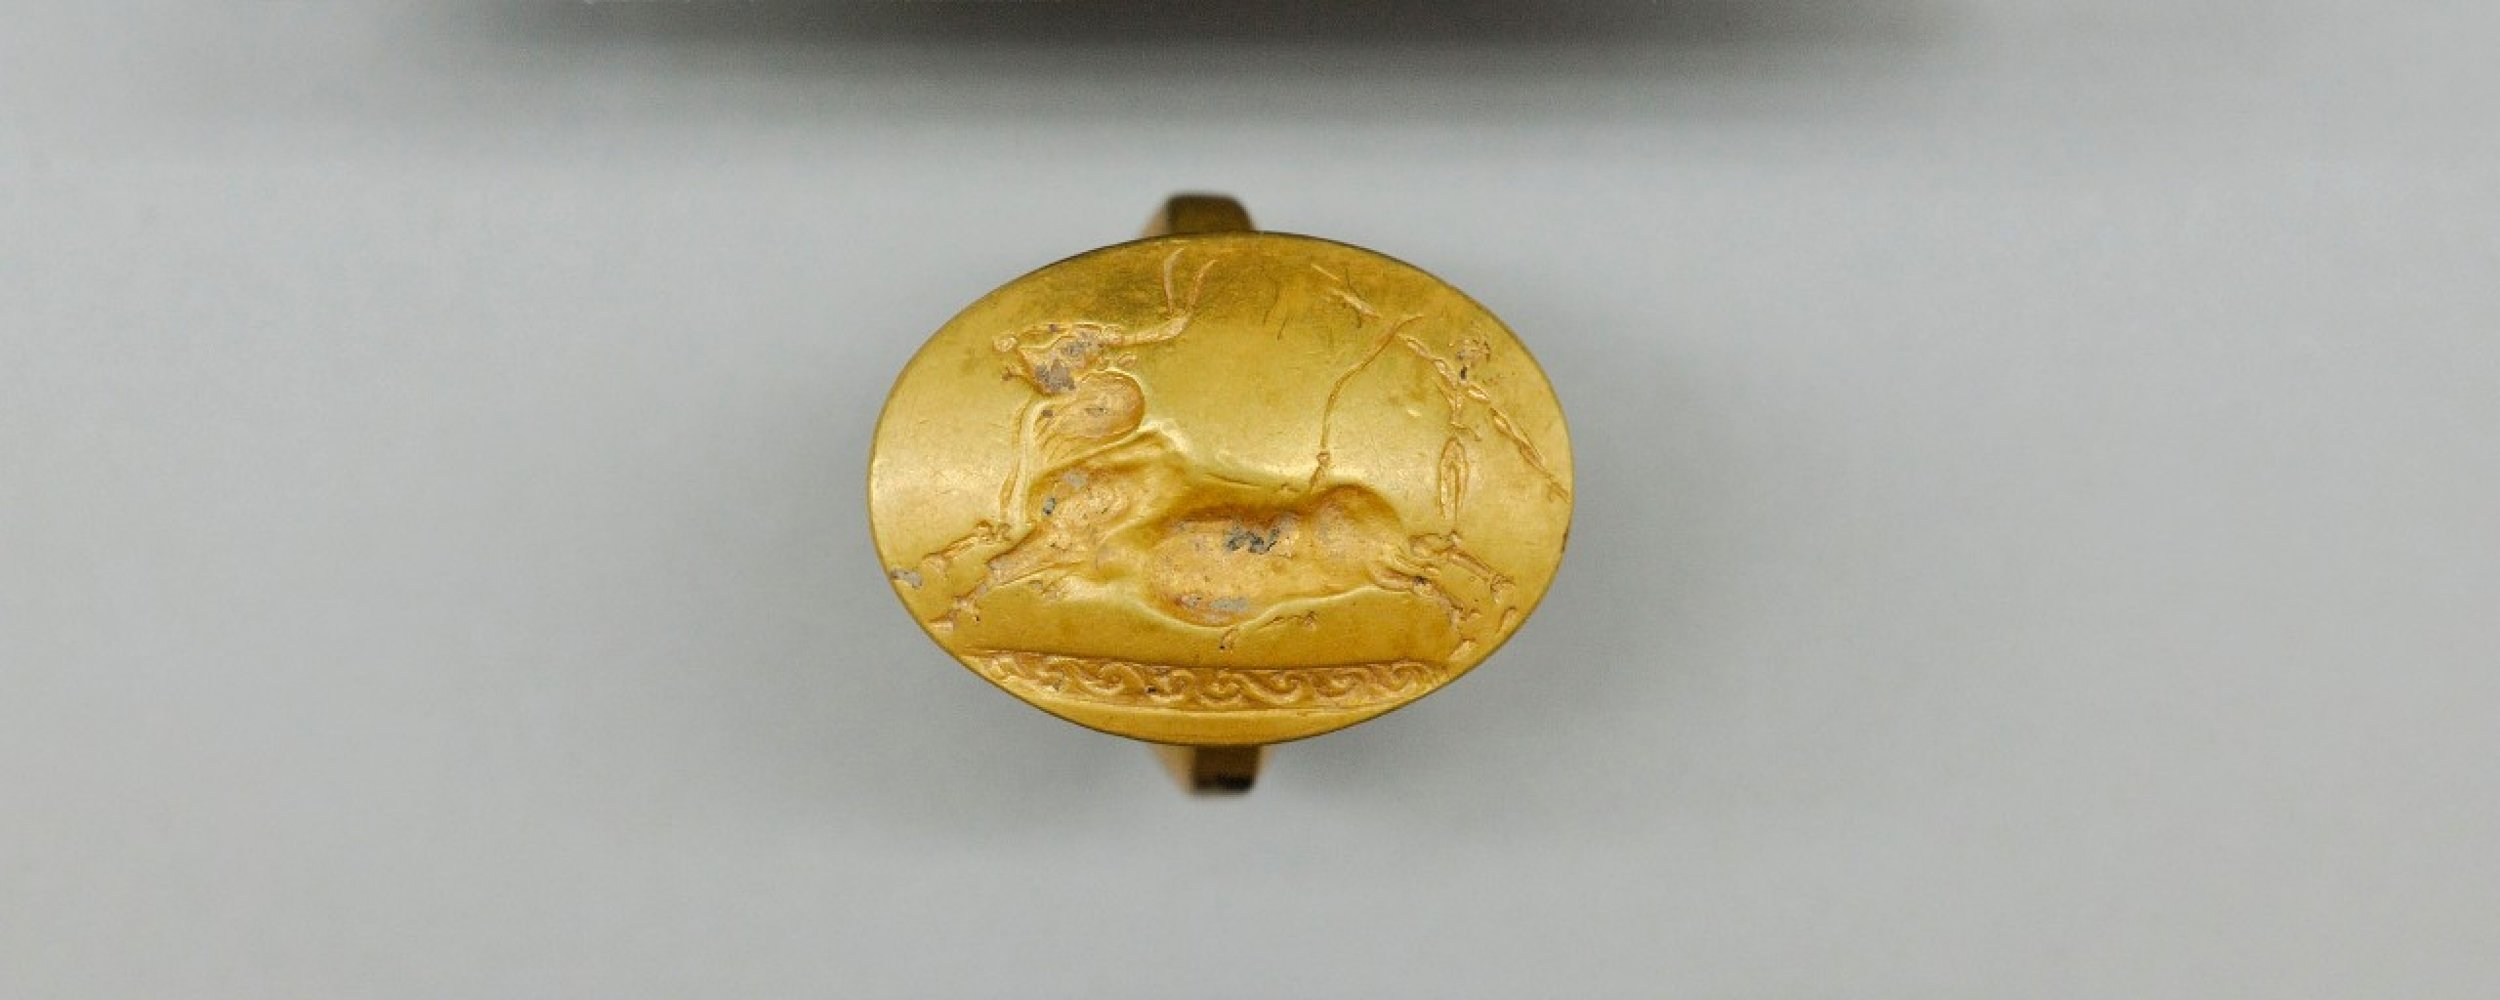 Mycenaean golden ring